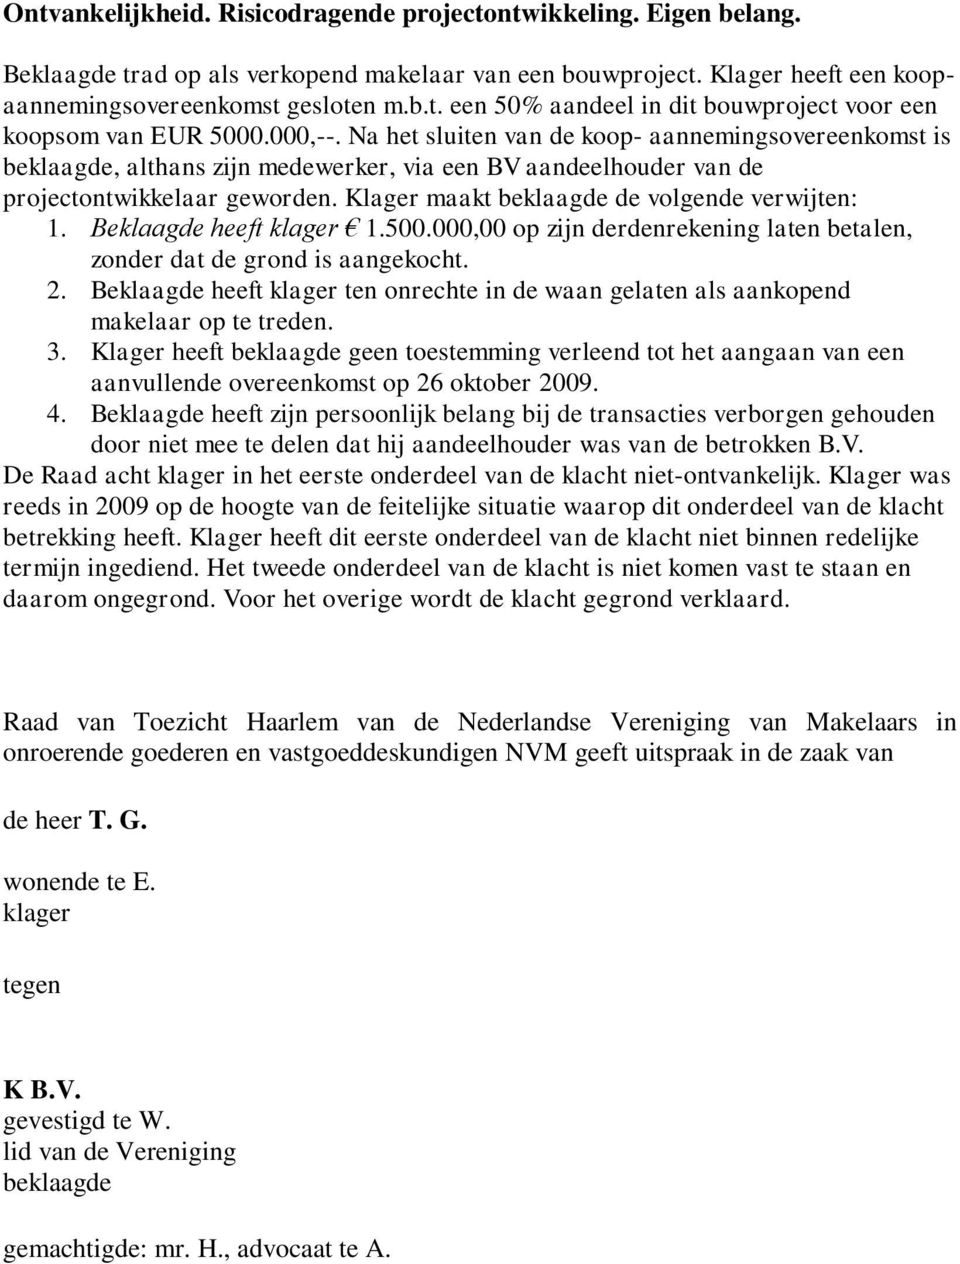 Klager maakt beklaagde de volgende verwijten: 1. Beklaagde heeft klager 1.500.000,00 op zijn derdenrekening laten betalen, zonder dat de grond is aangekocht. 2.